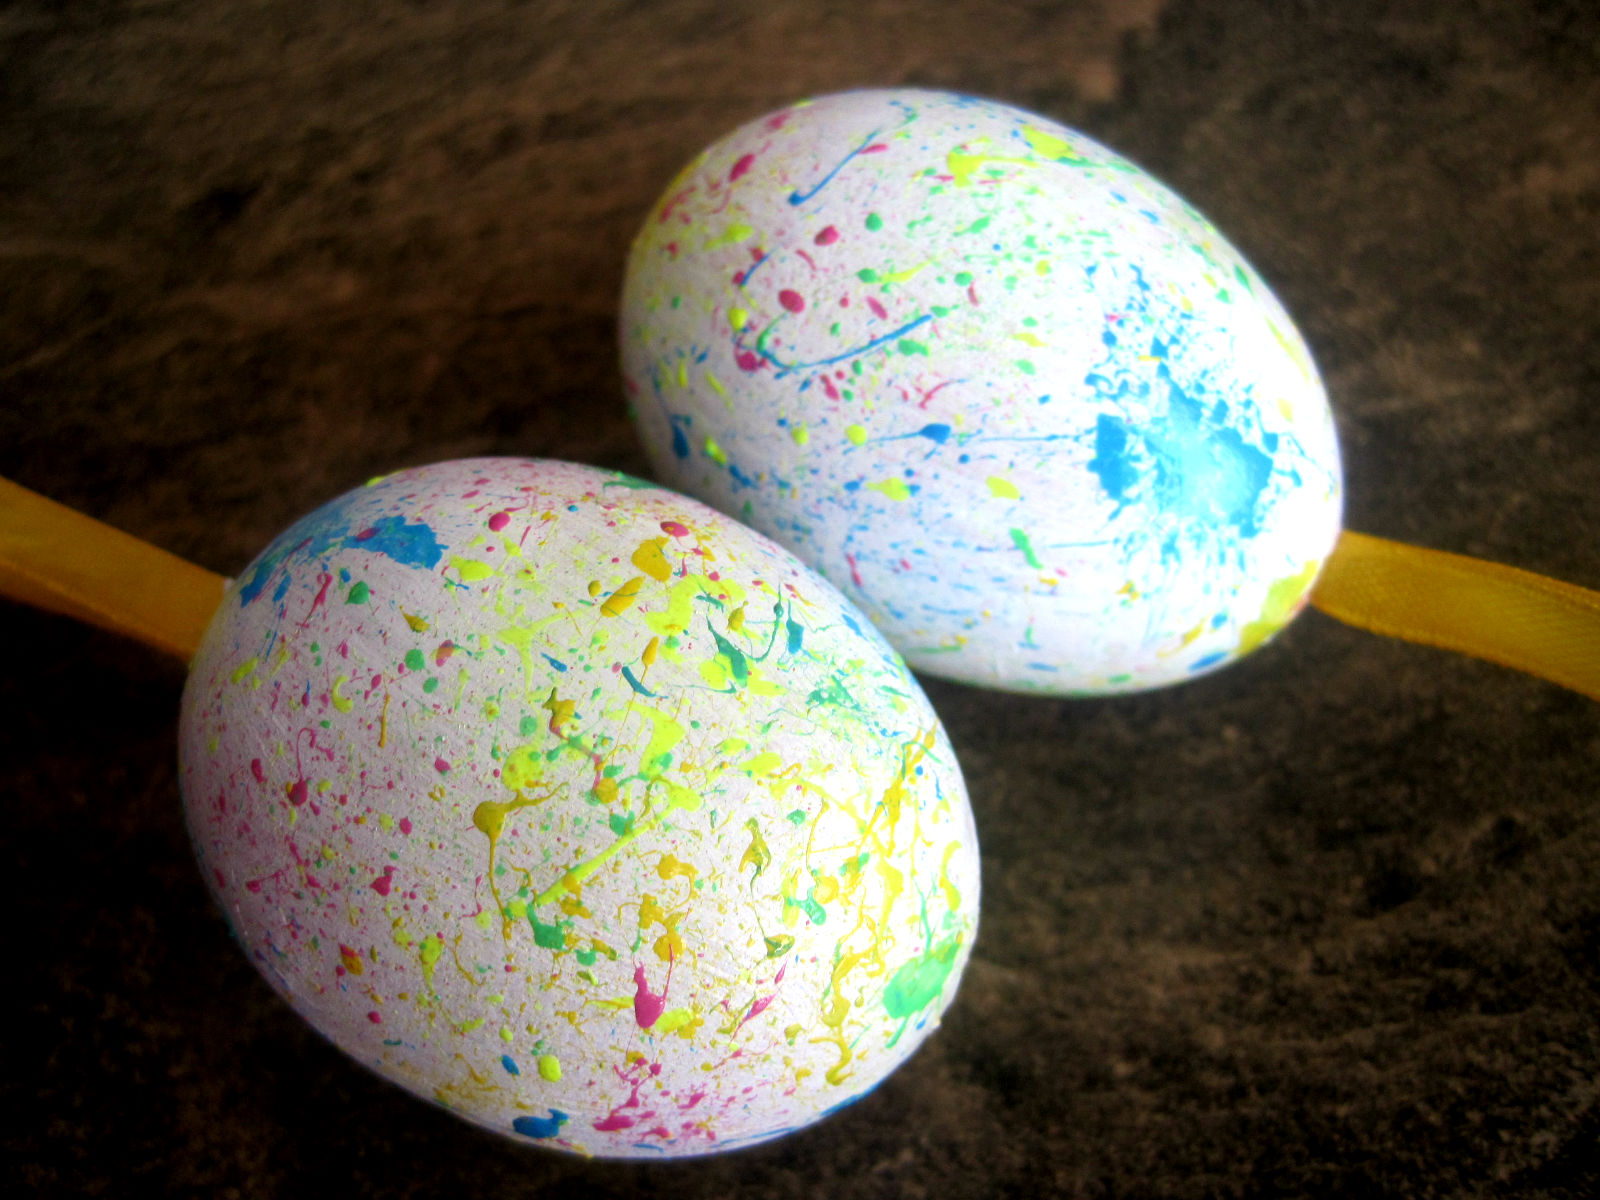 http://mixofdiy.blogspot.com/2014/04/splatter-eggs.html